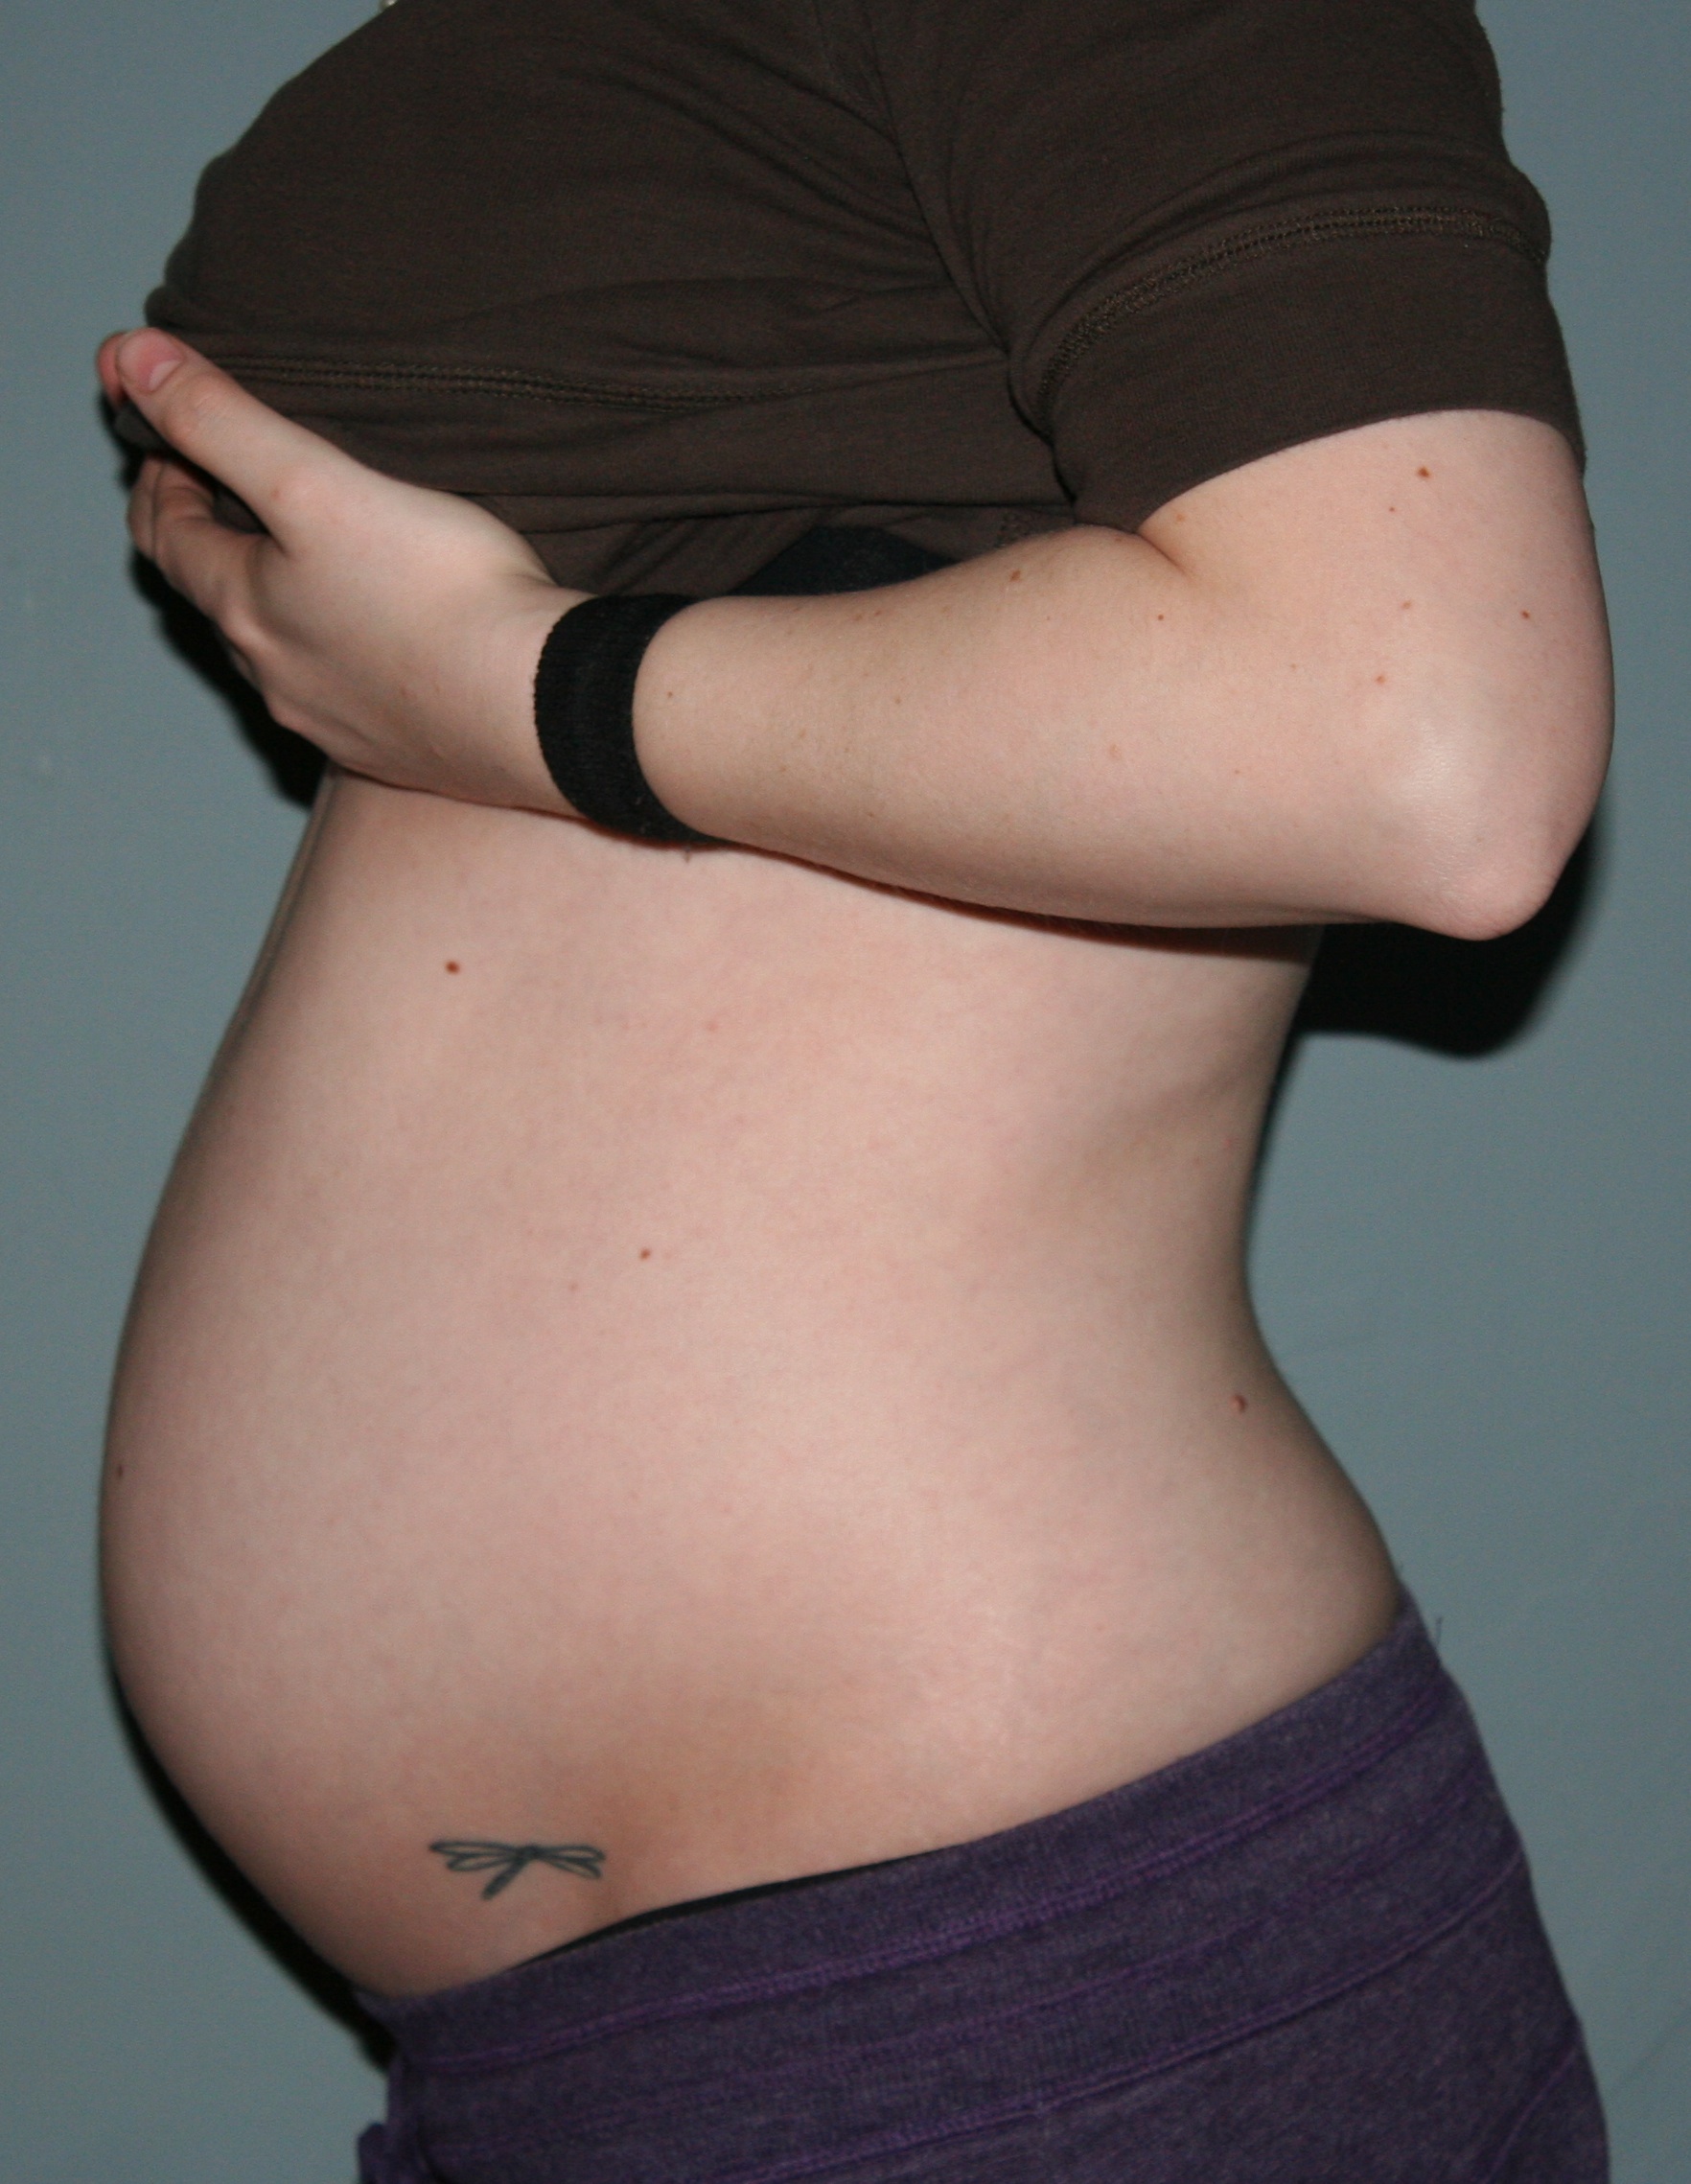 Живот на 2 части. Живот на 15 неделе. Фото живота. 15 Недель беременности. Живот на 15 неделе беременности двойней.